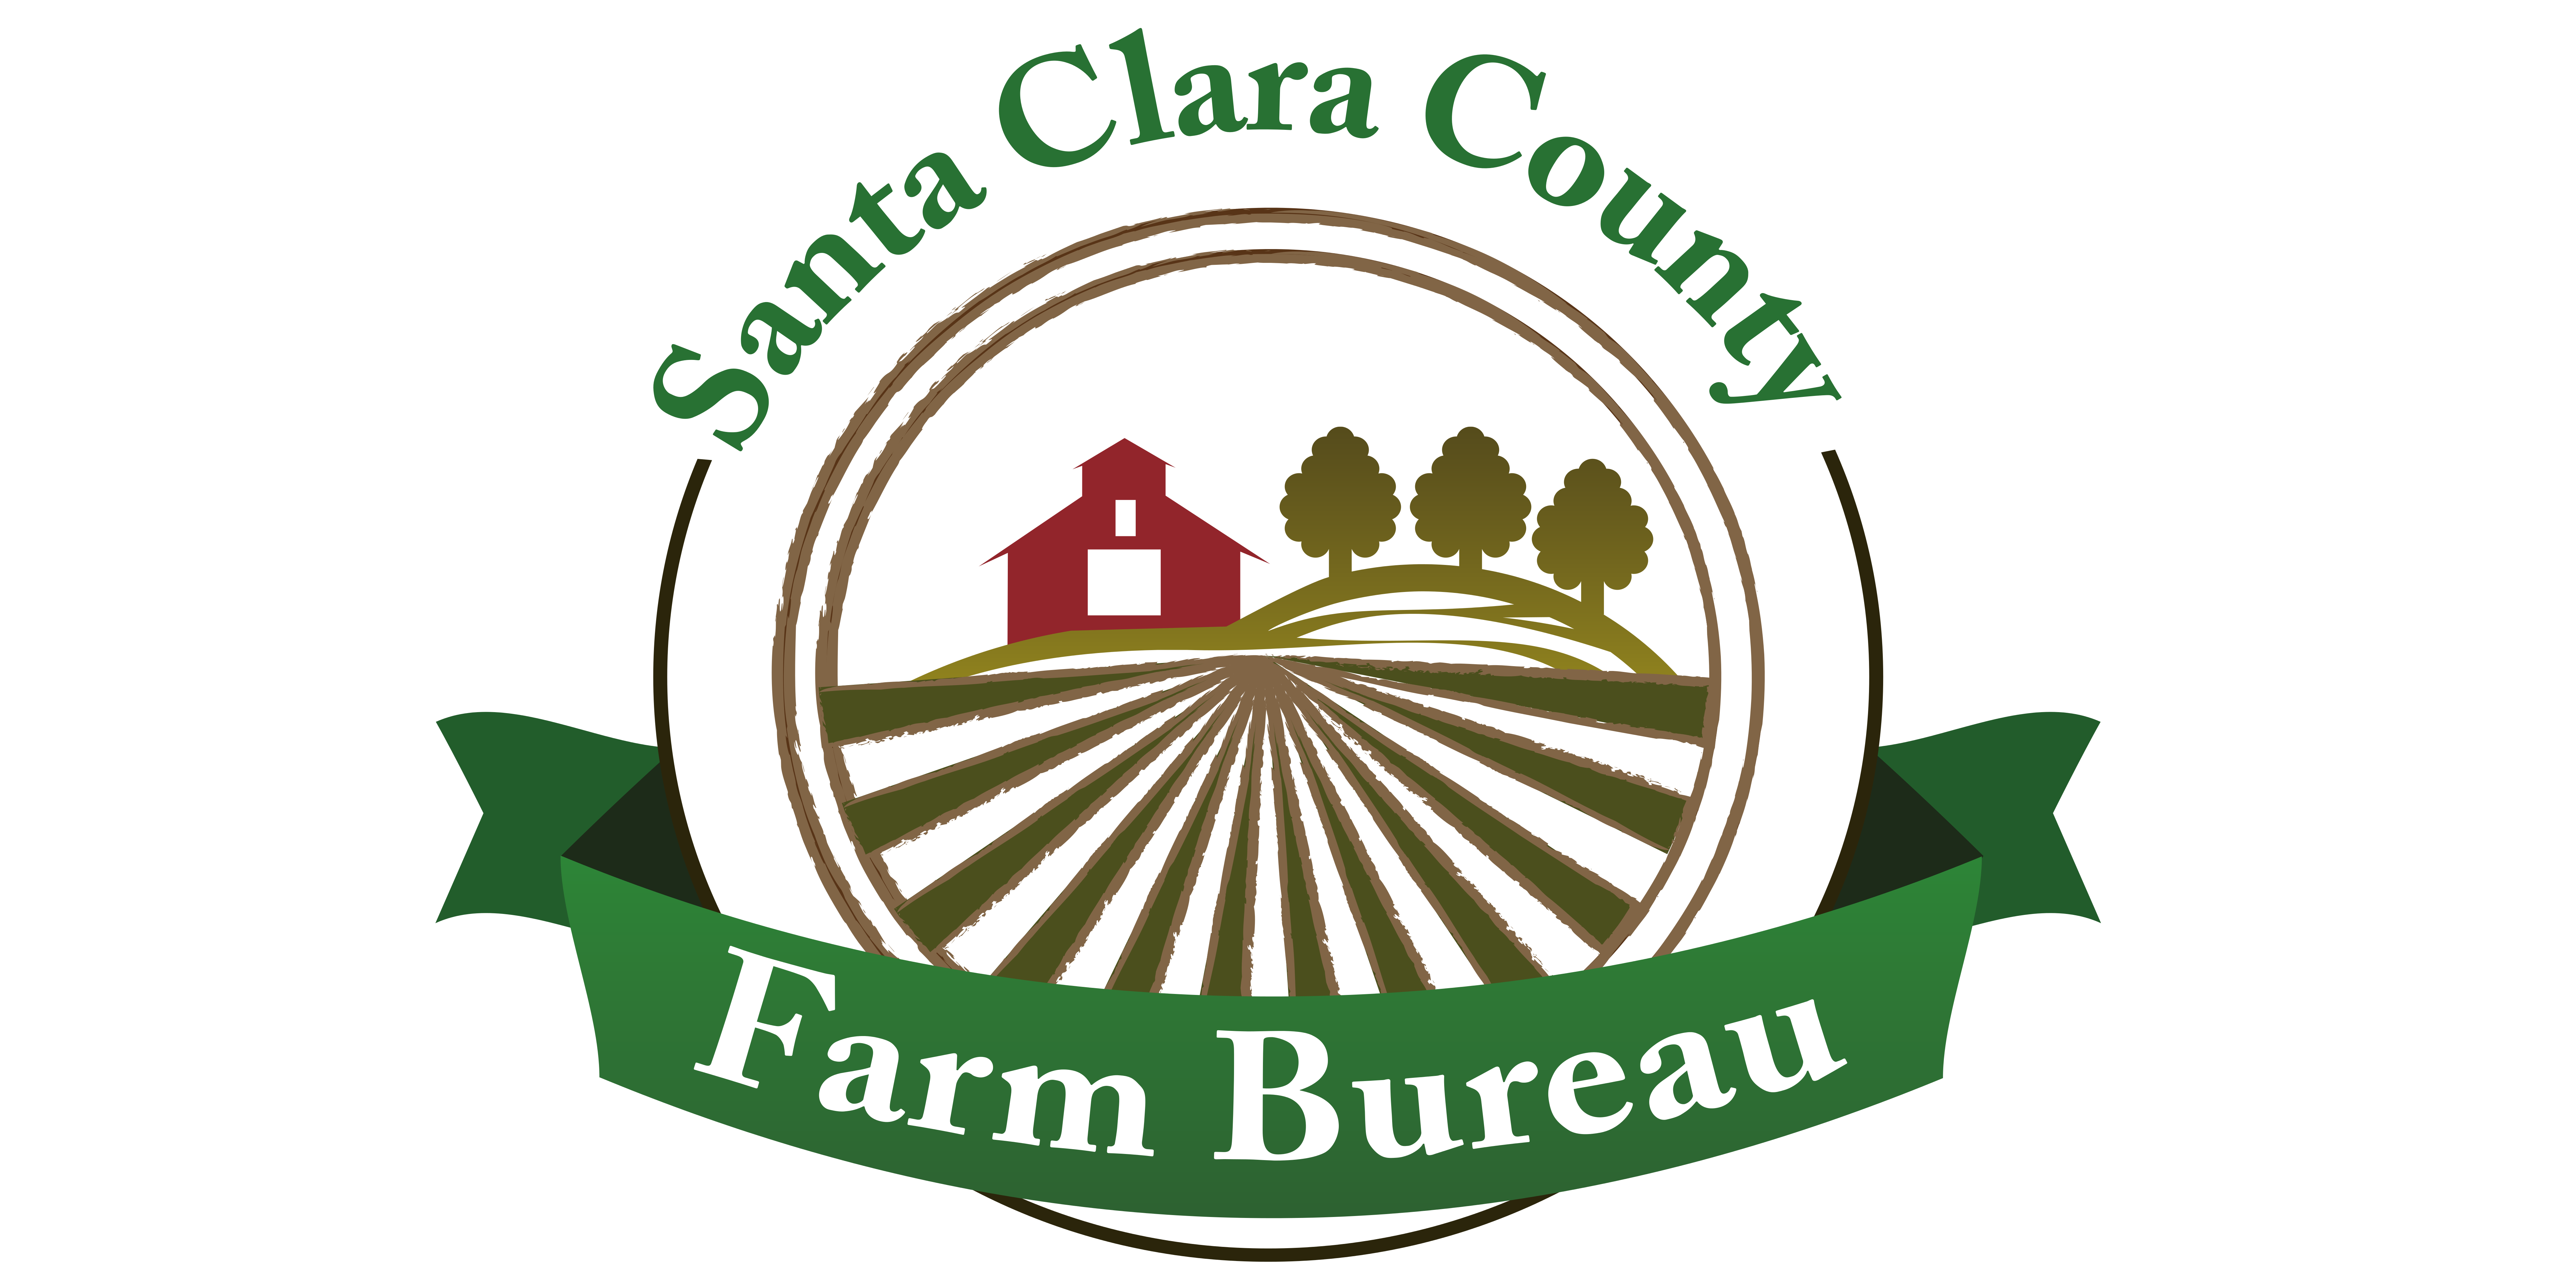 Santa Clara County Farm Bureau Golf Tournament